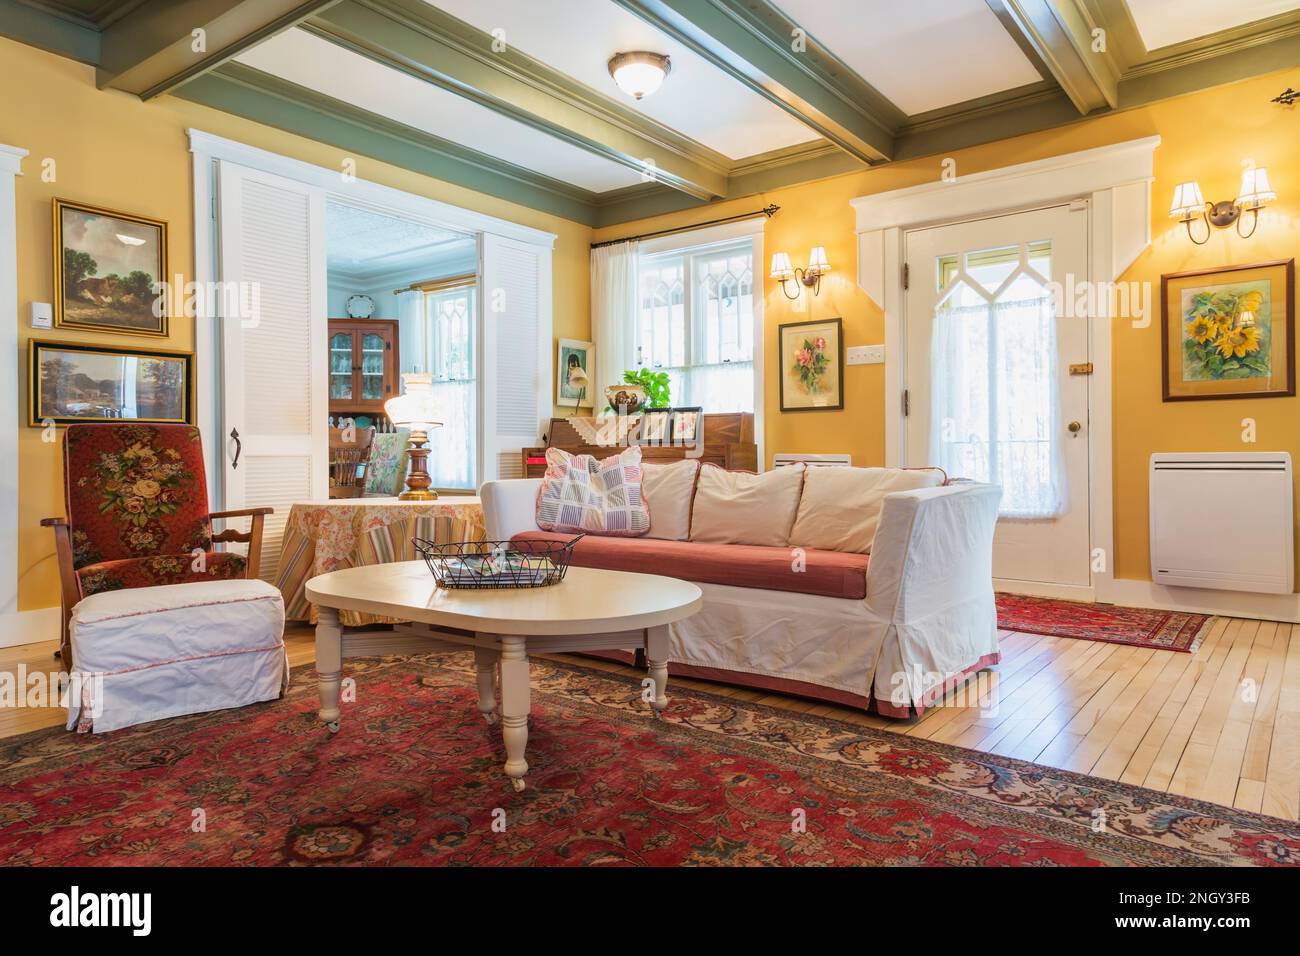 Sofabett aus rotem Samt, gepolsterter Holzsessel, weißer Holztisch im Wohnzimmer mit rotem Teppich und Birkenholzböden. Stockfoto